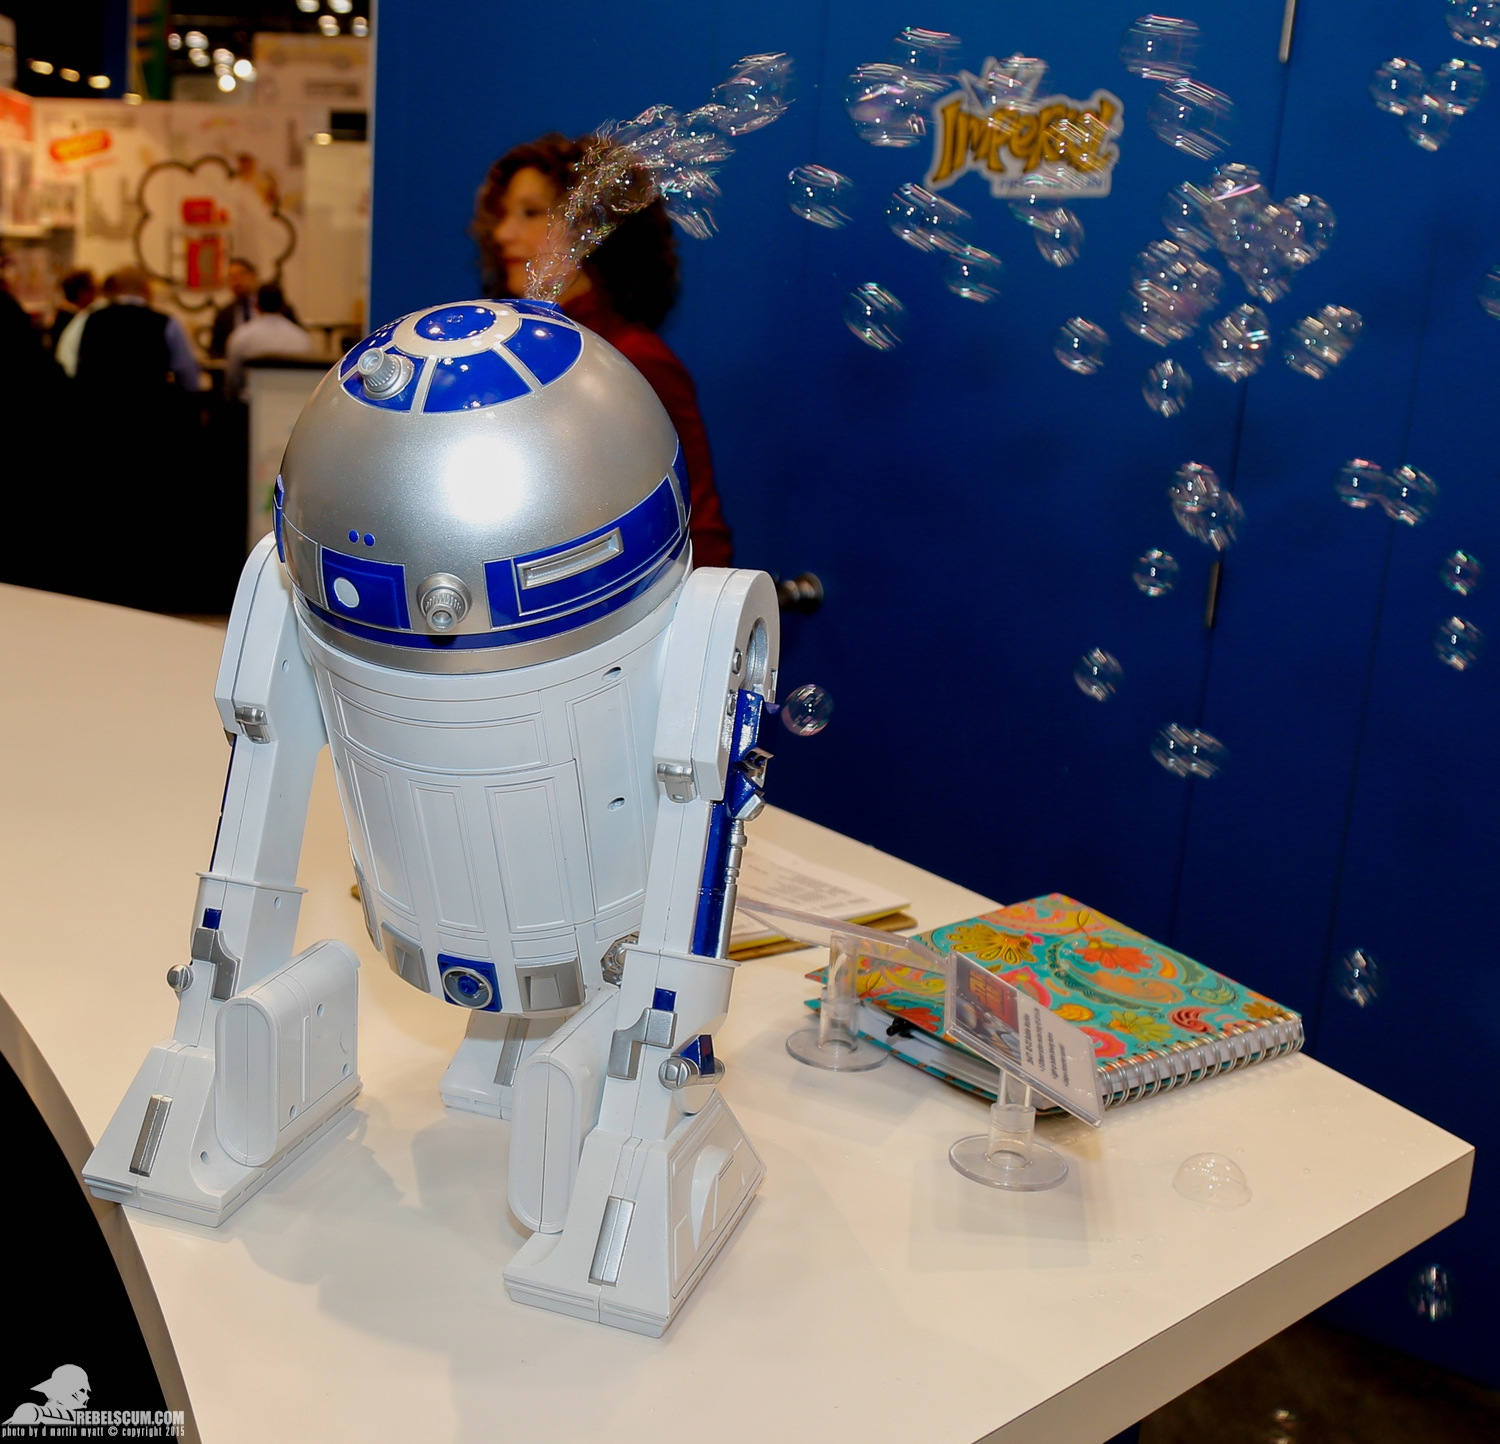 2015-Toy-Fair-Imperial-Star-Wars-Bubble-Fun-010.jpg